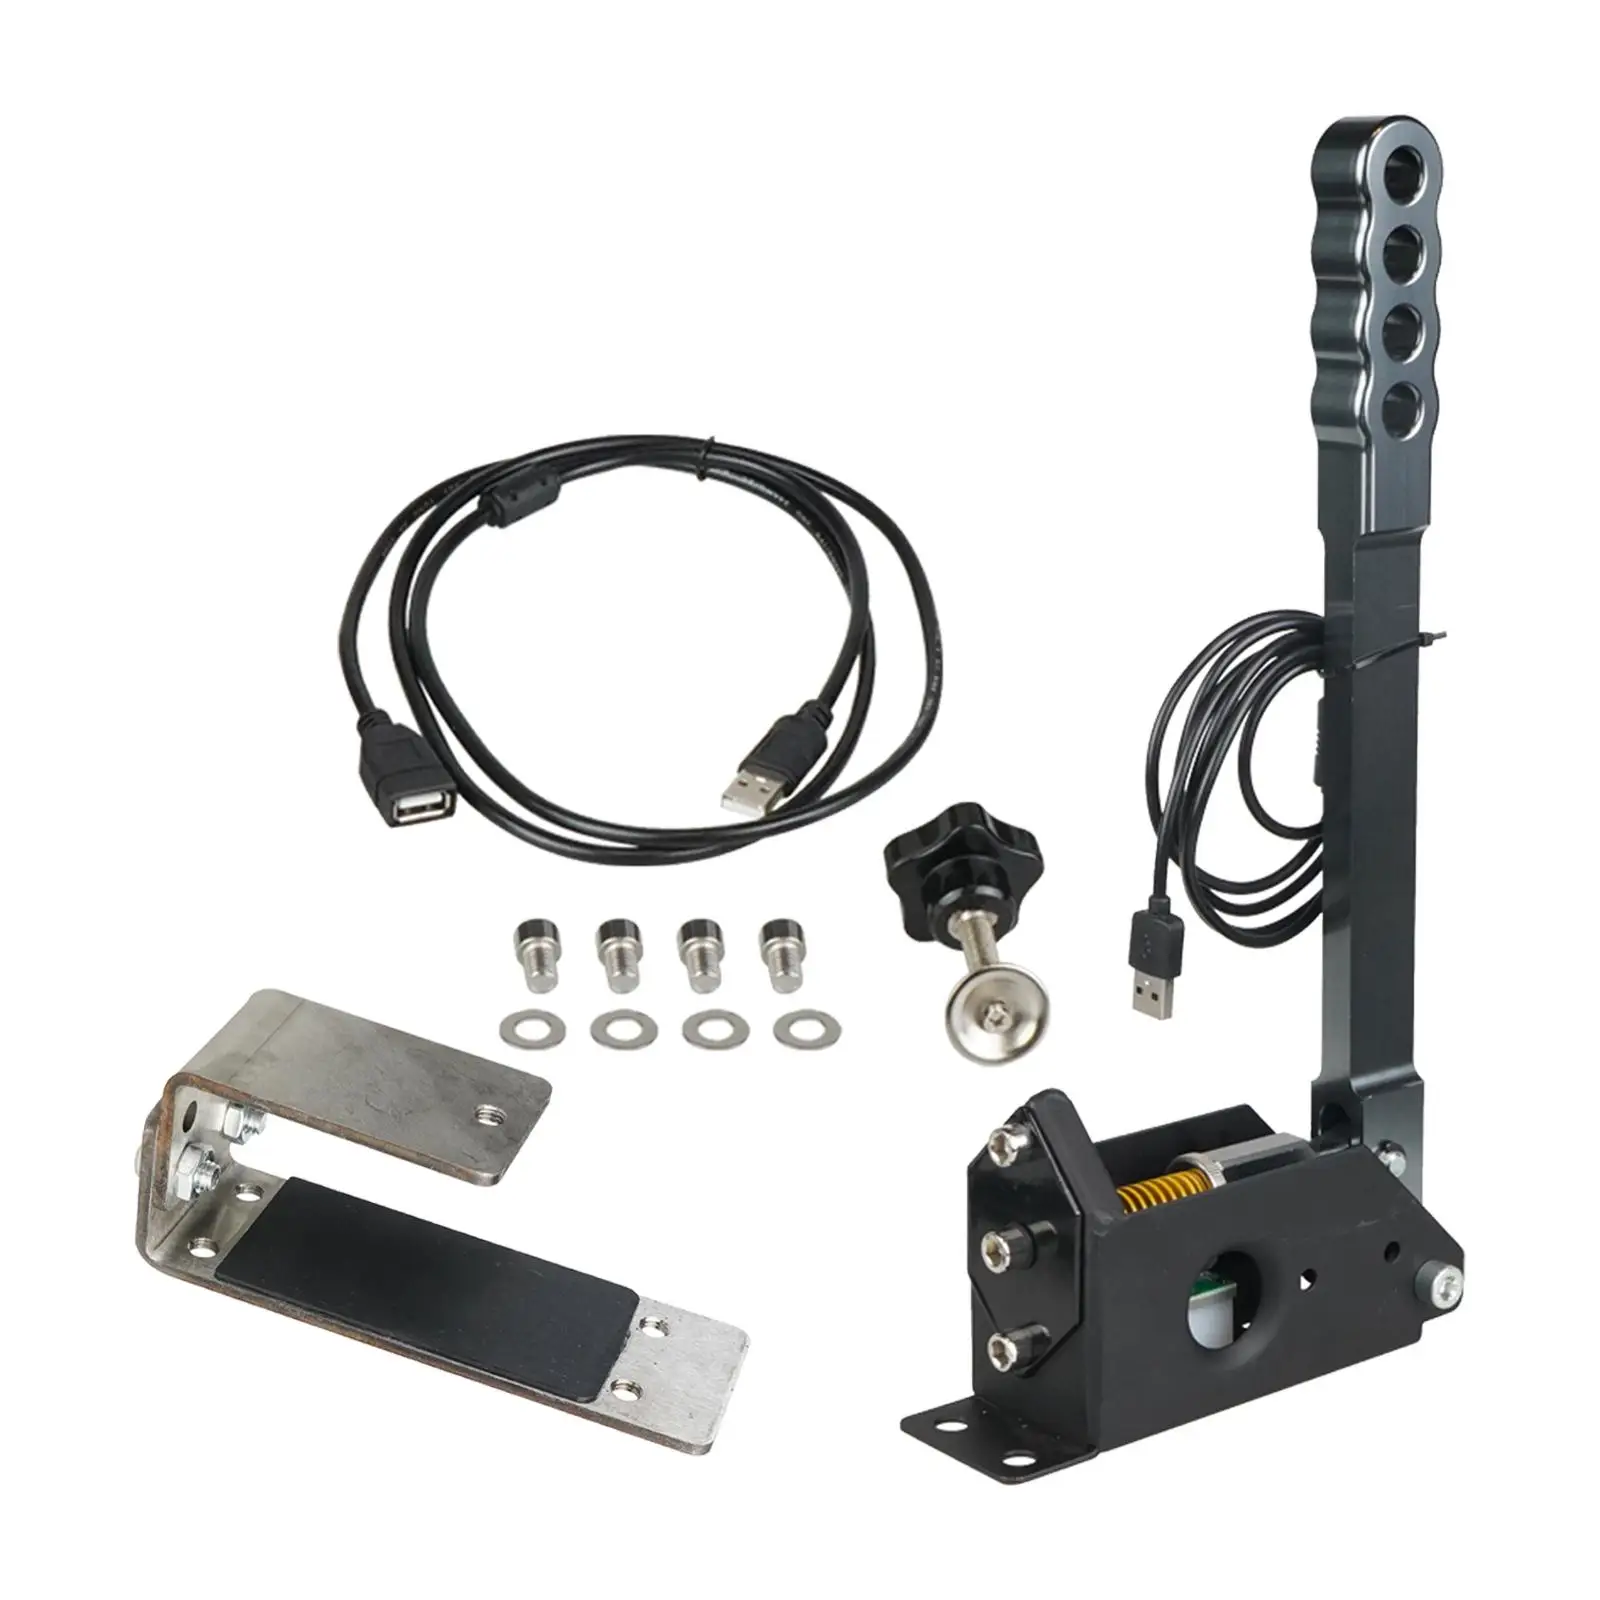 Brake System Handbrake Plug and Play Hall Sensor Easy to Install Handbrake Clamp for Logitech G29 Racing Games G27 G25 PC